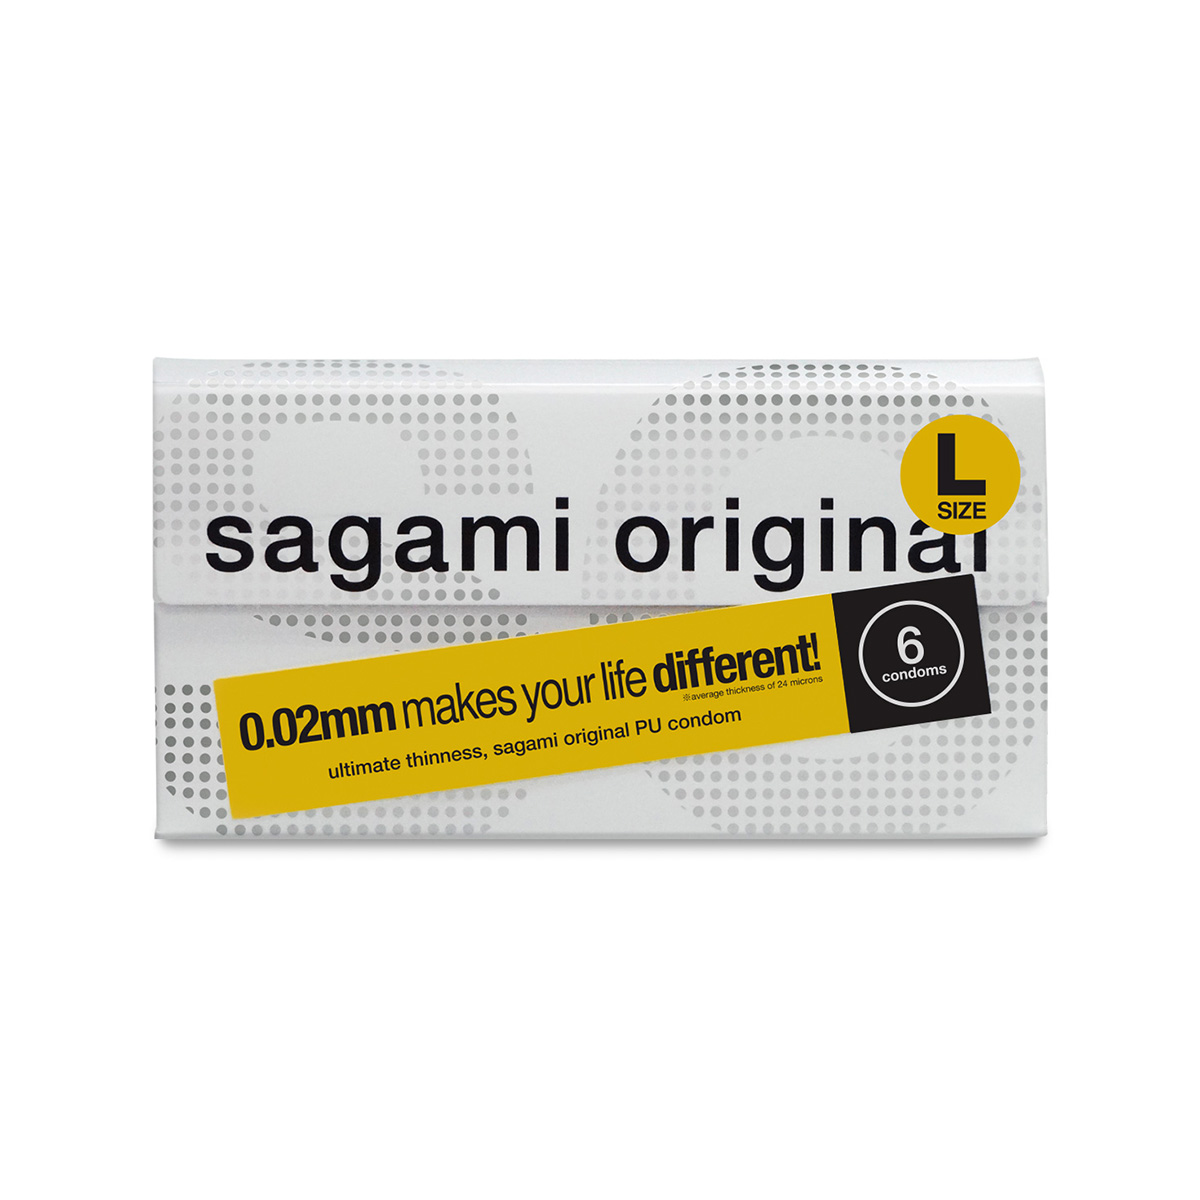 Sagami Original 0.02 L Size 6s